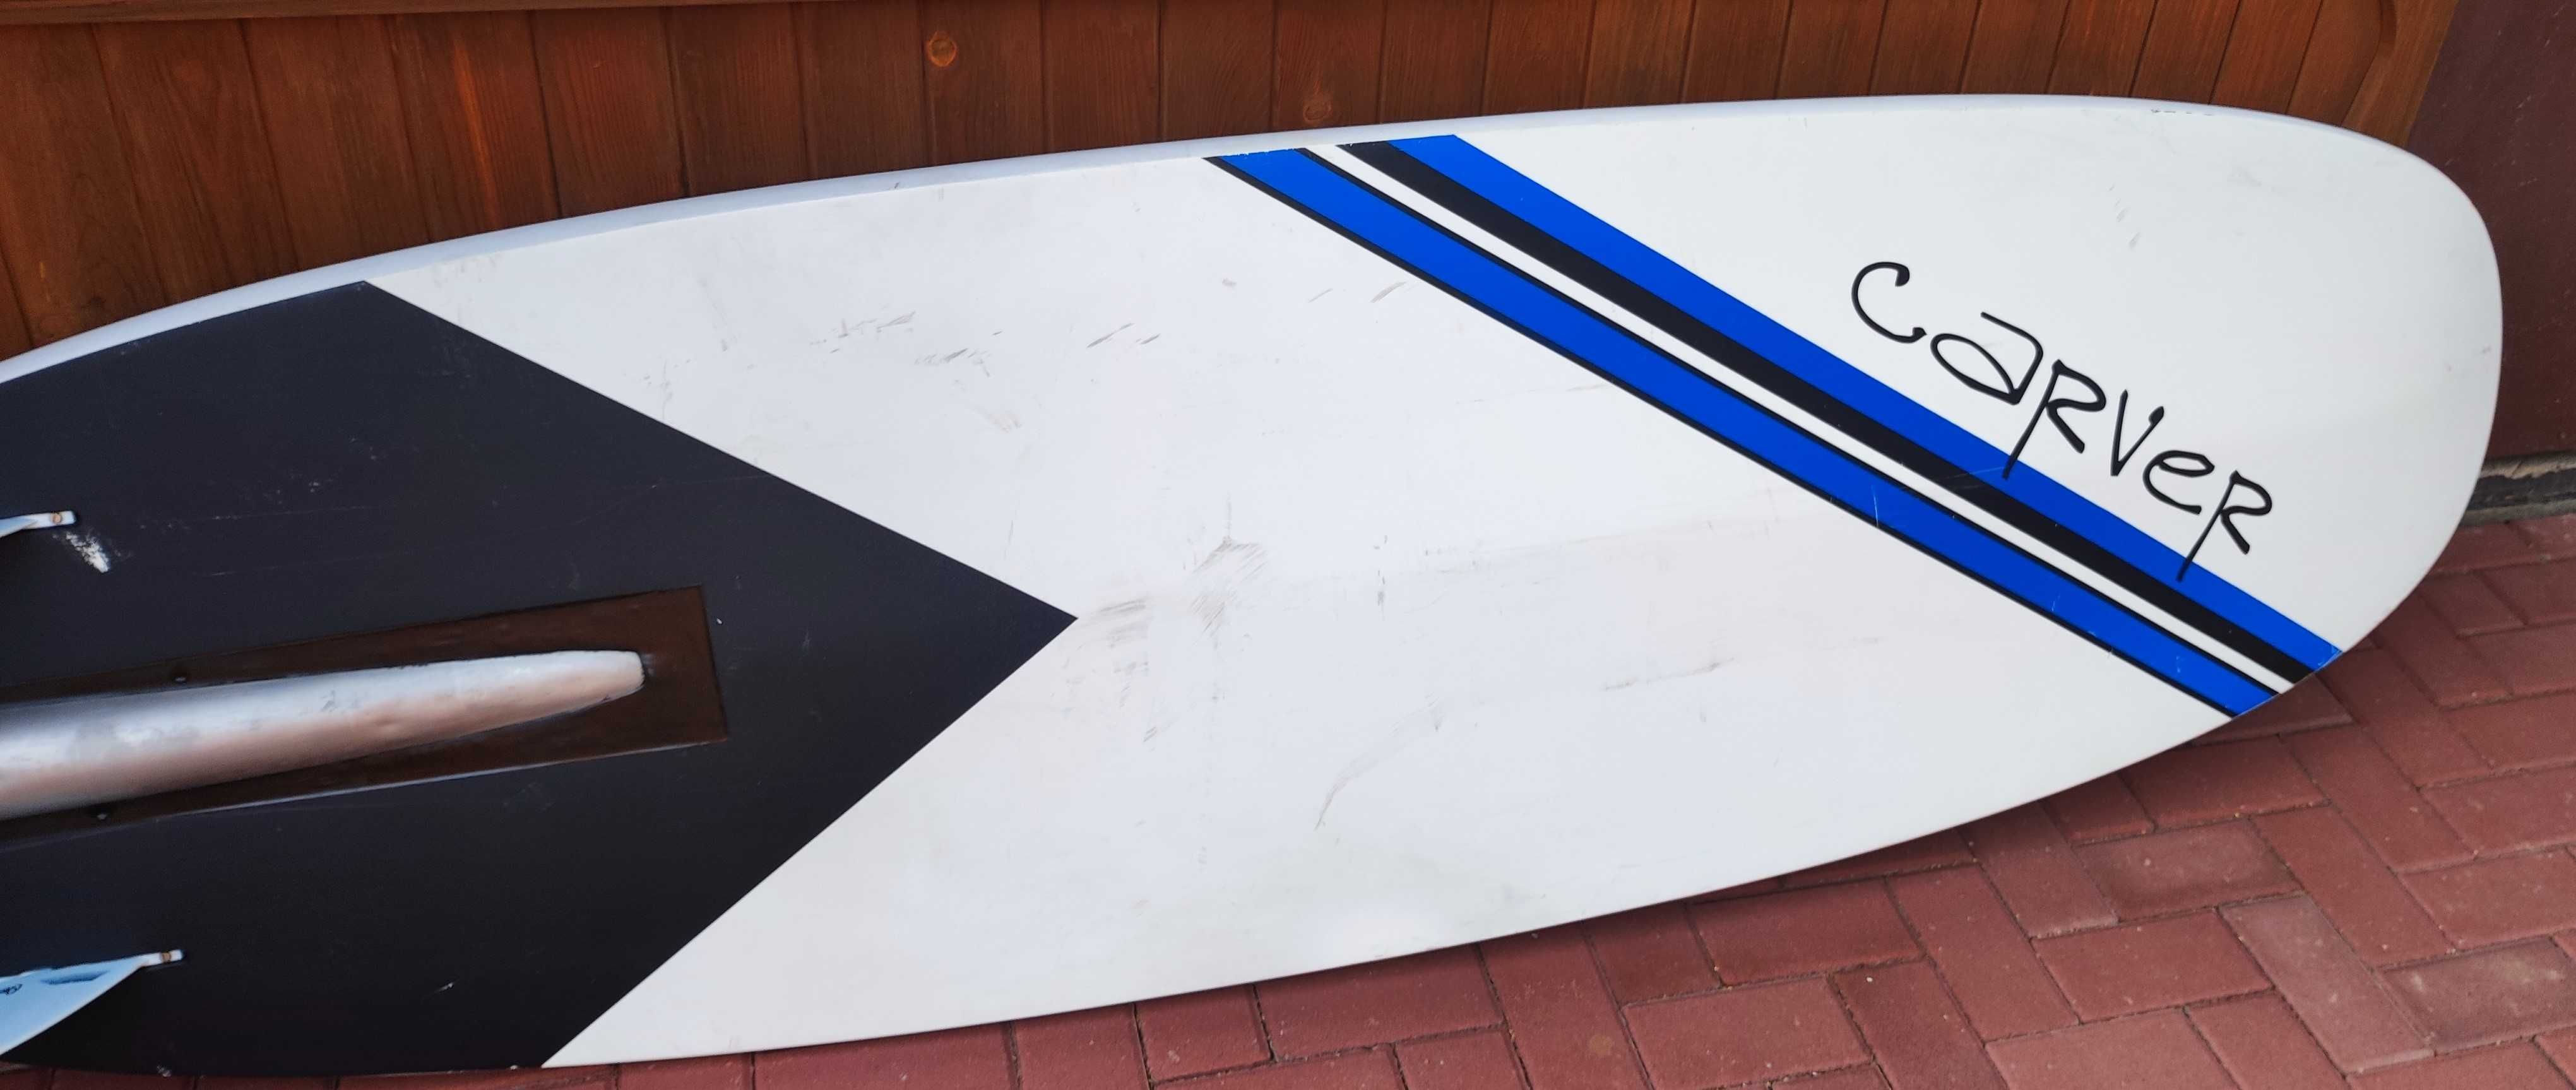 Onean Carver elektryczna deska surfingowa , jetsurf